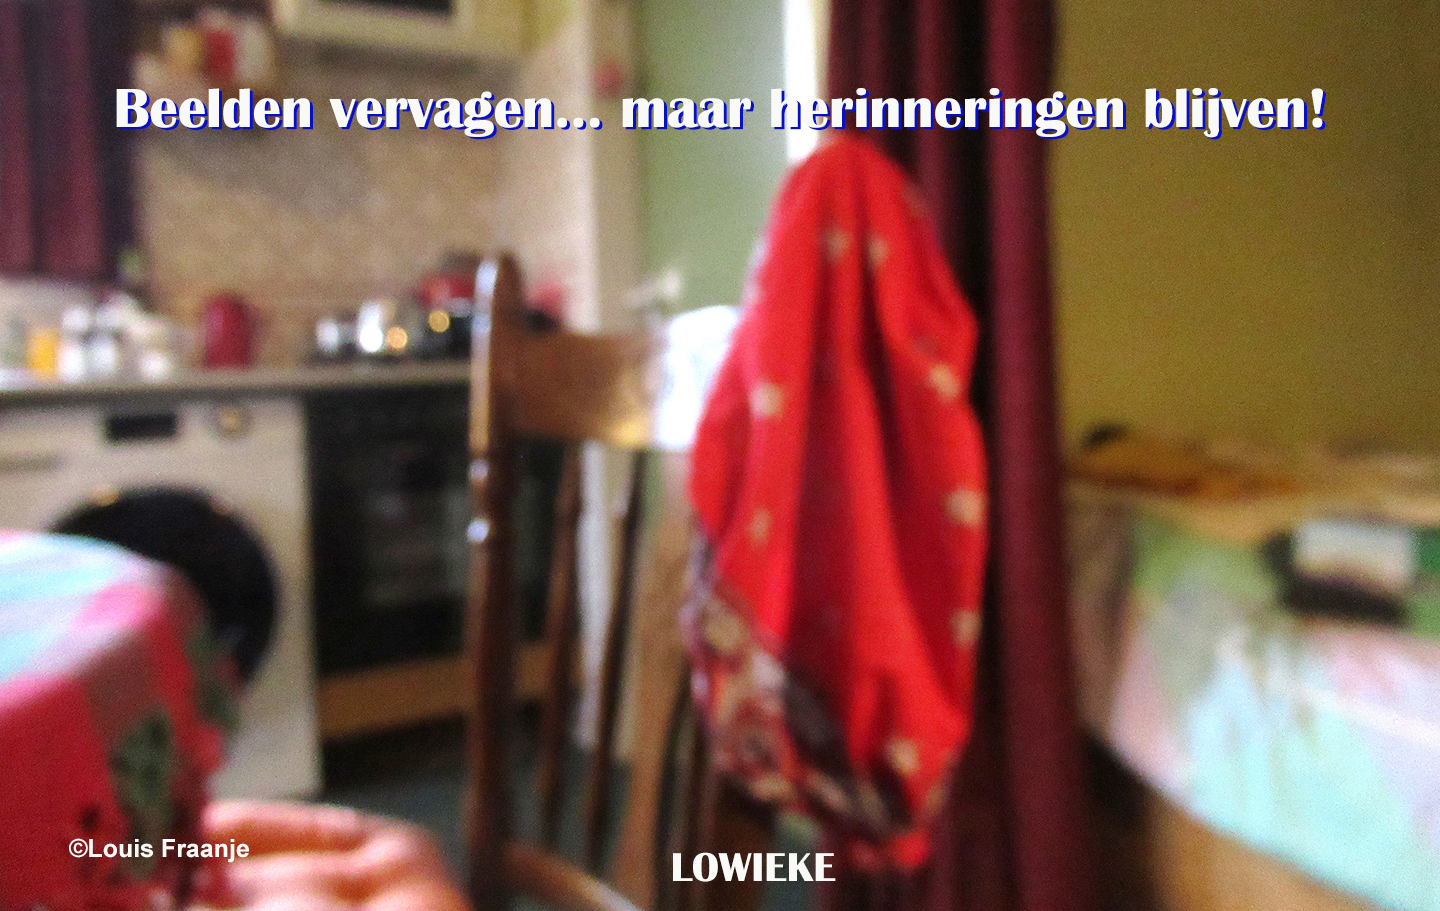 De boerenzakdoek hangt als stille getuige aan de rugleuning van de keukenstoel - Foto: ©Louis Fraanje